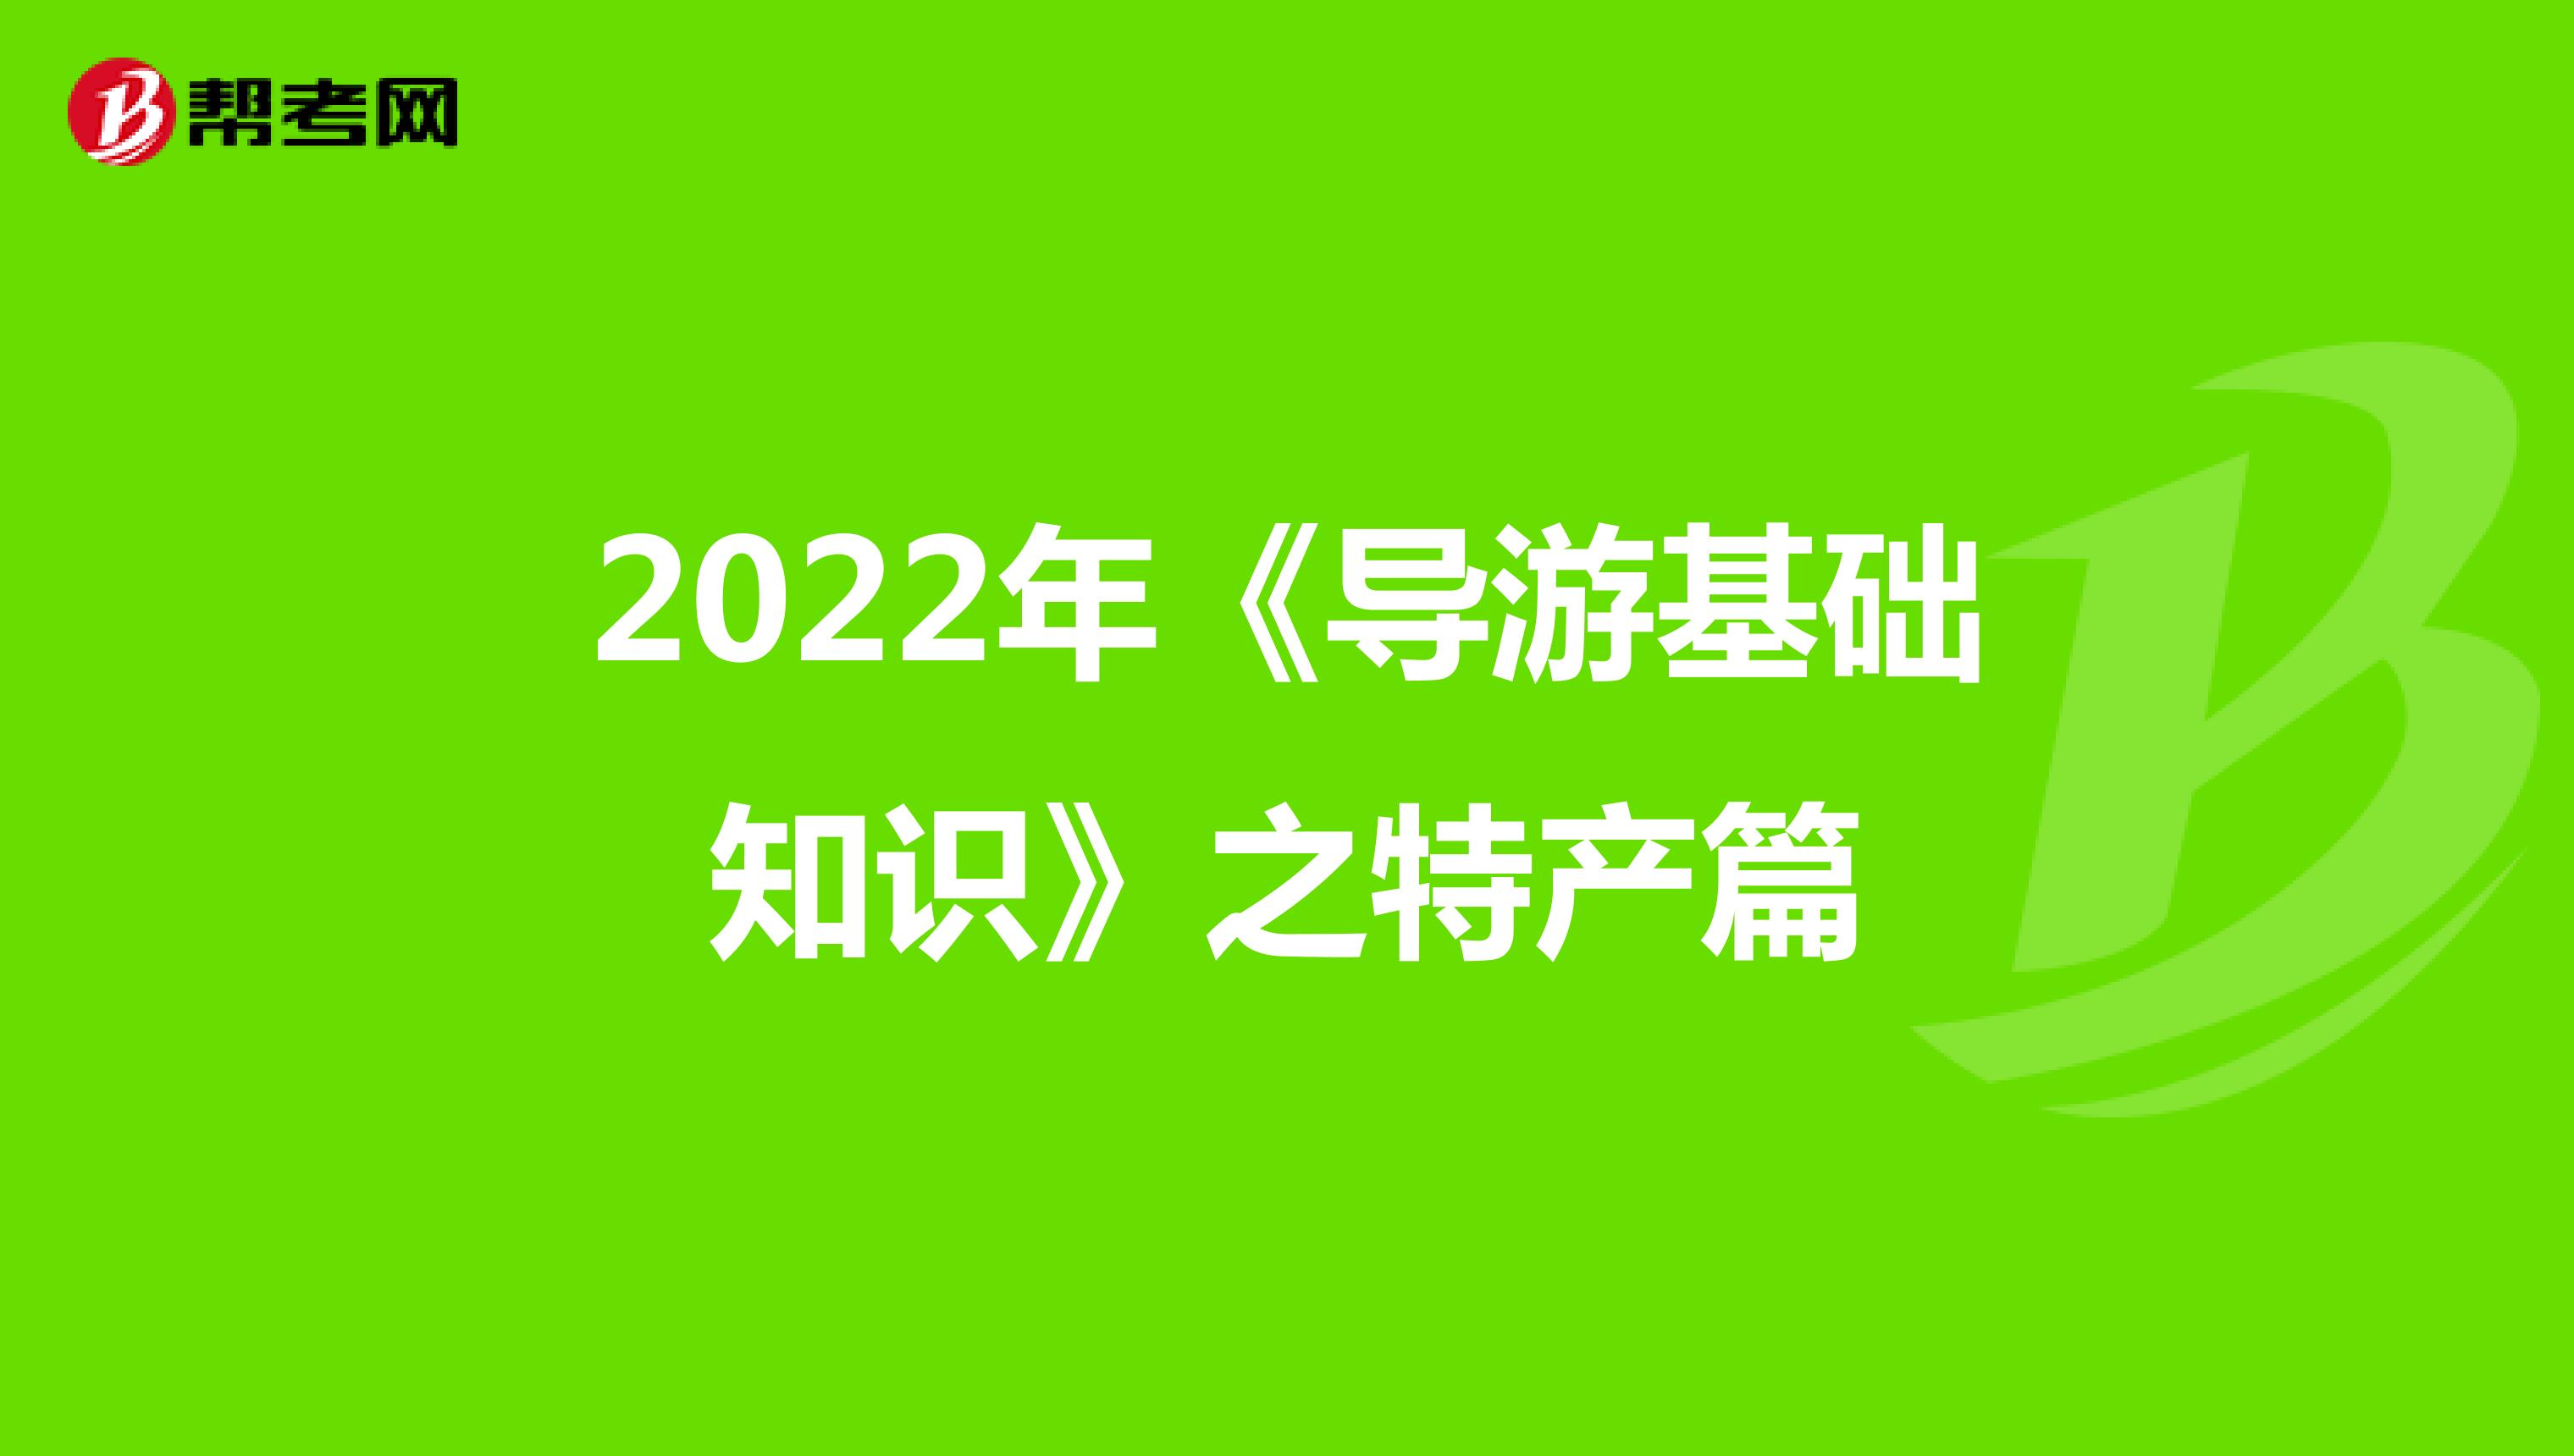 2022年《导游基础知识》之特产篇